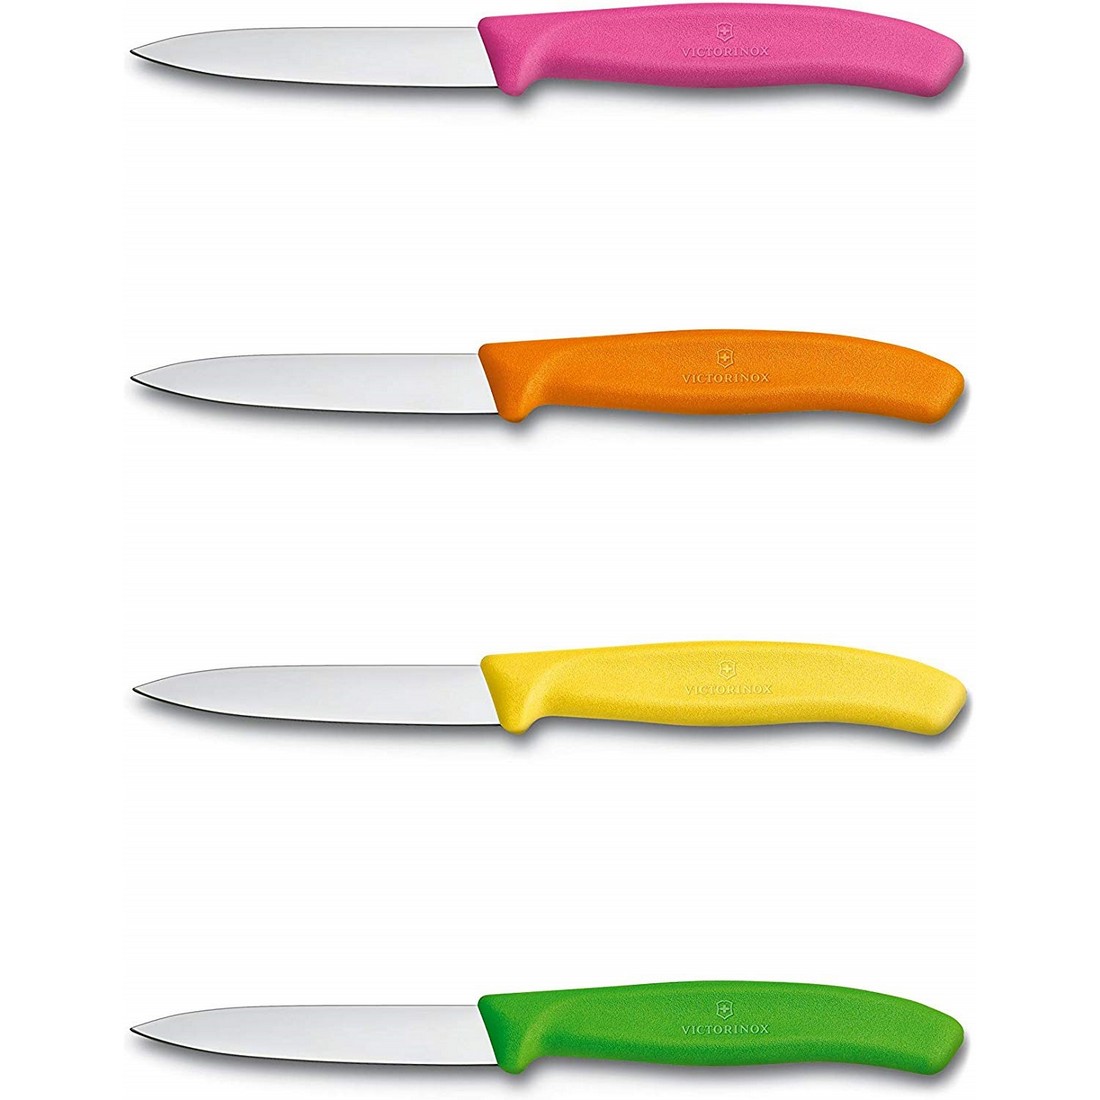 Schälmesser 8 cm – verschiedene Farben Gelb, Orange, Rosa, Grün – Sonderpackung mit 24 Stück